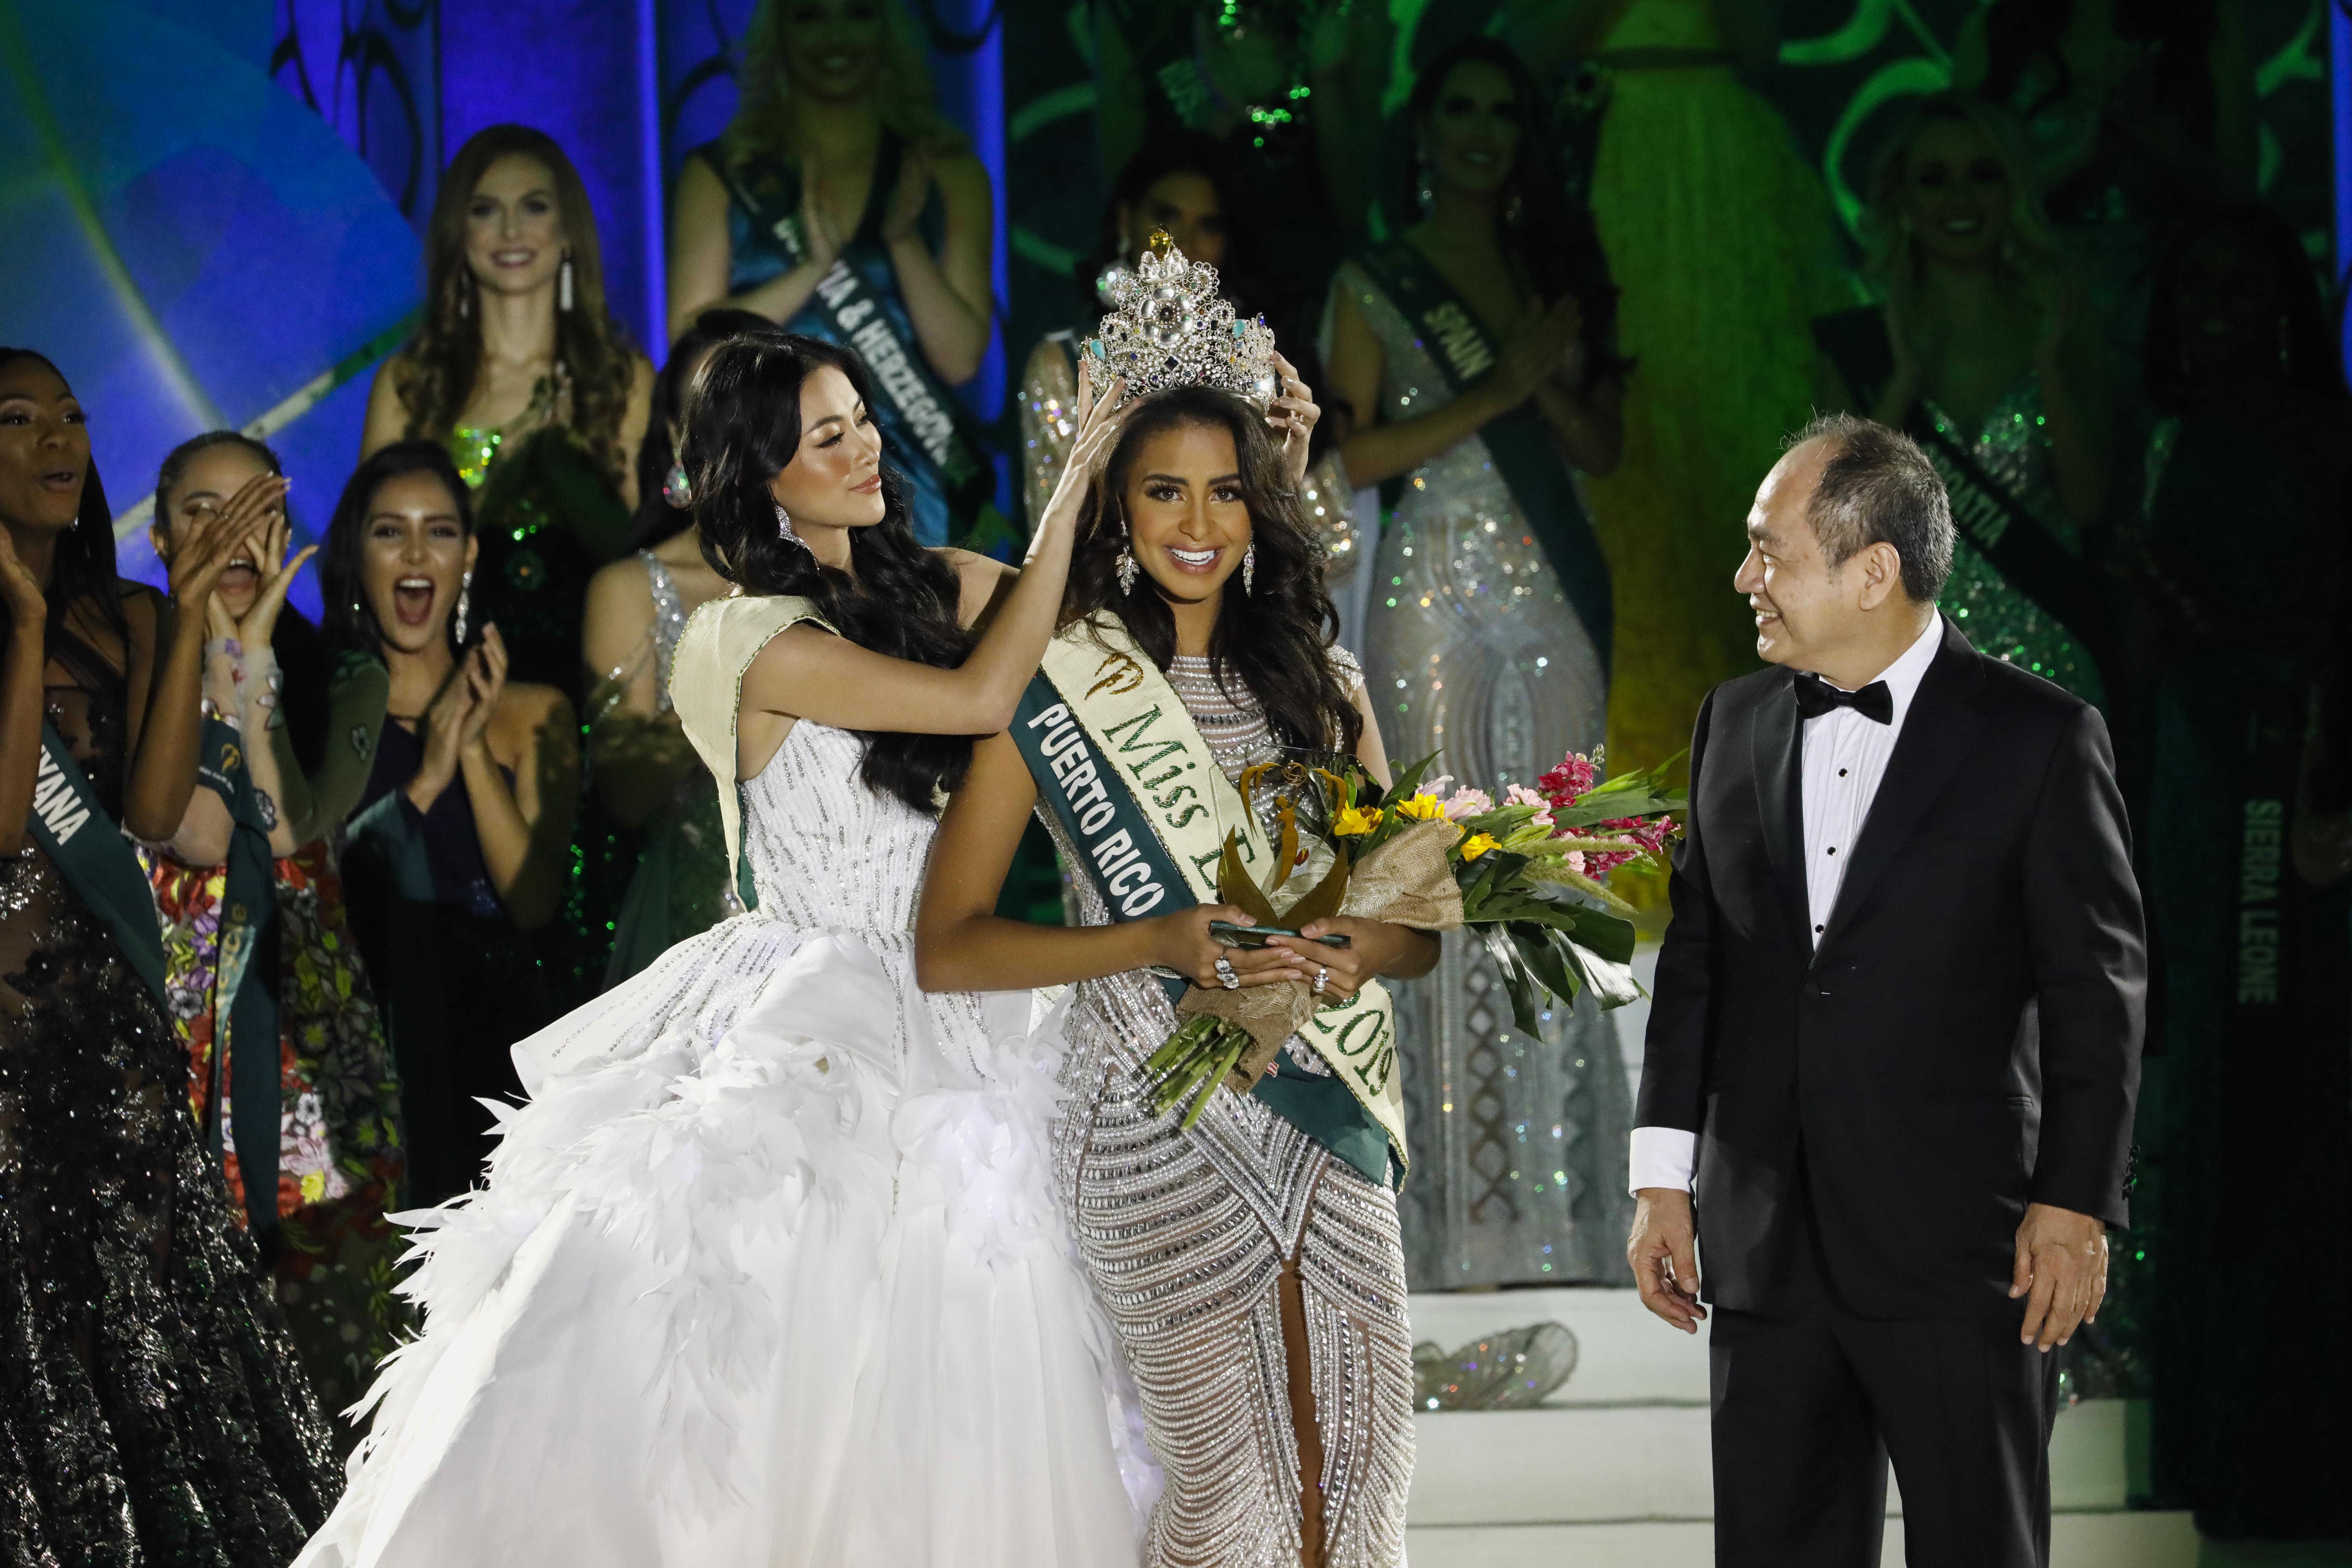 地球小姐选美比赛迎来加冕之夜 最大赢家是波多黎各姑娘